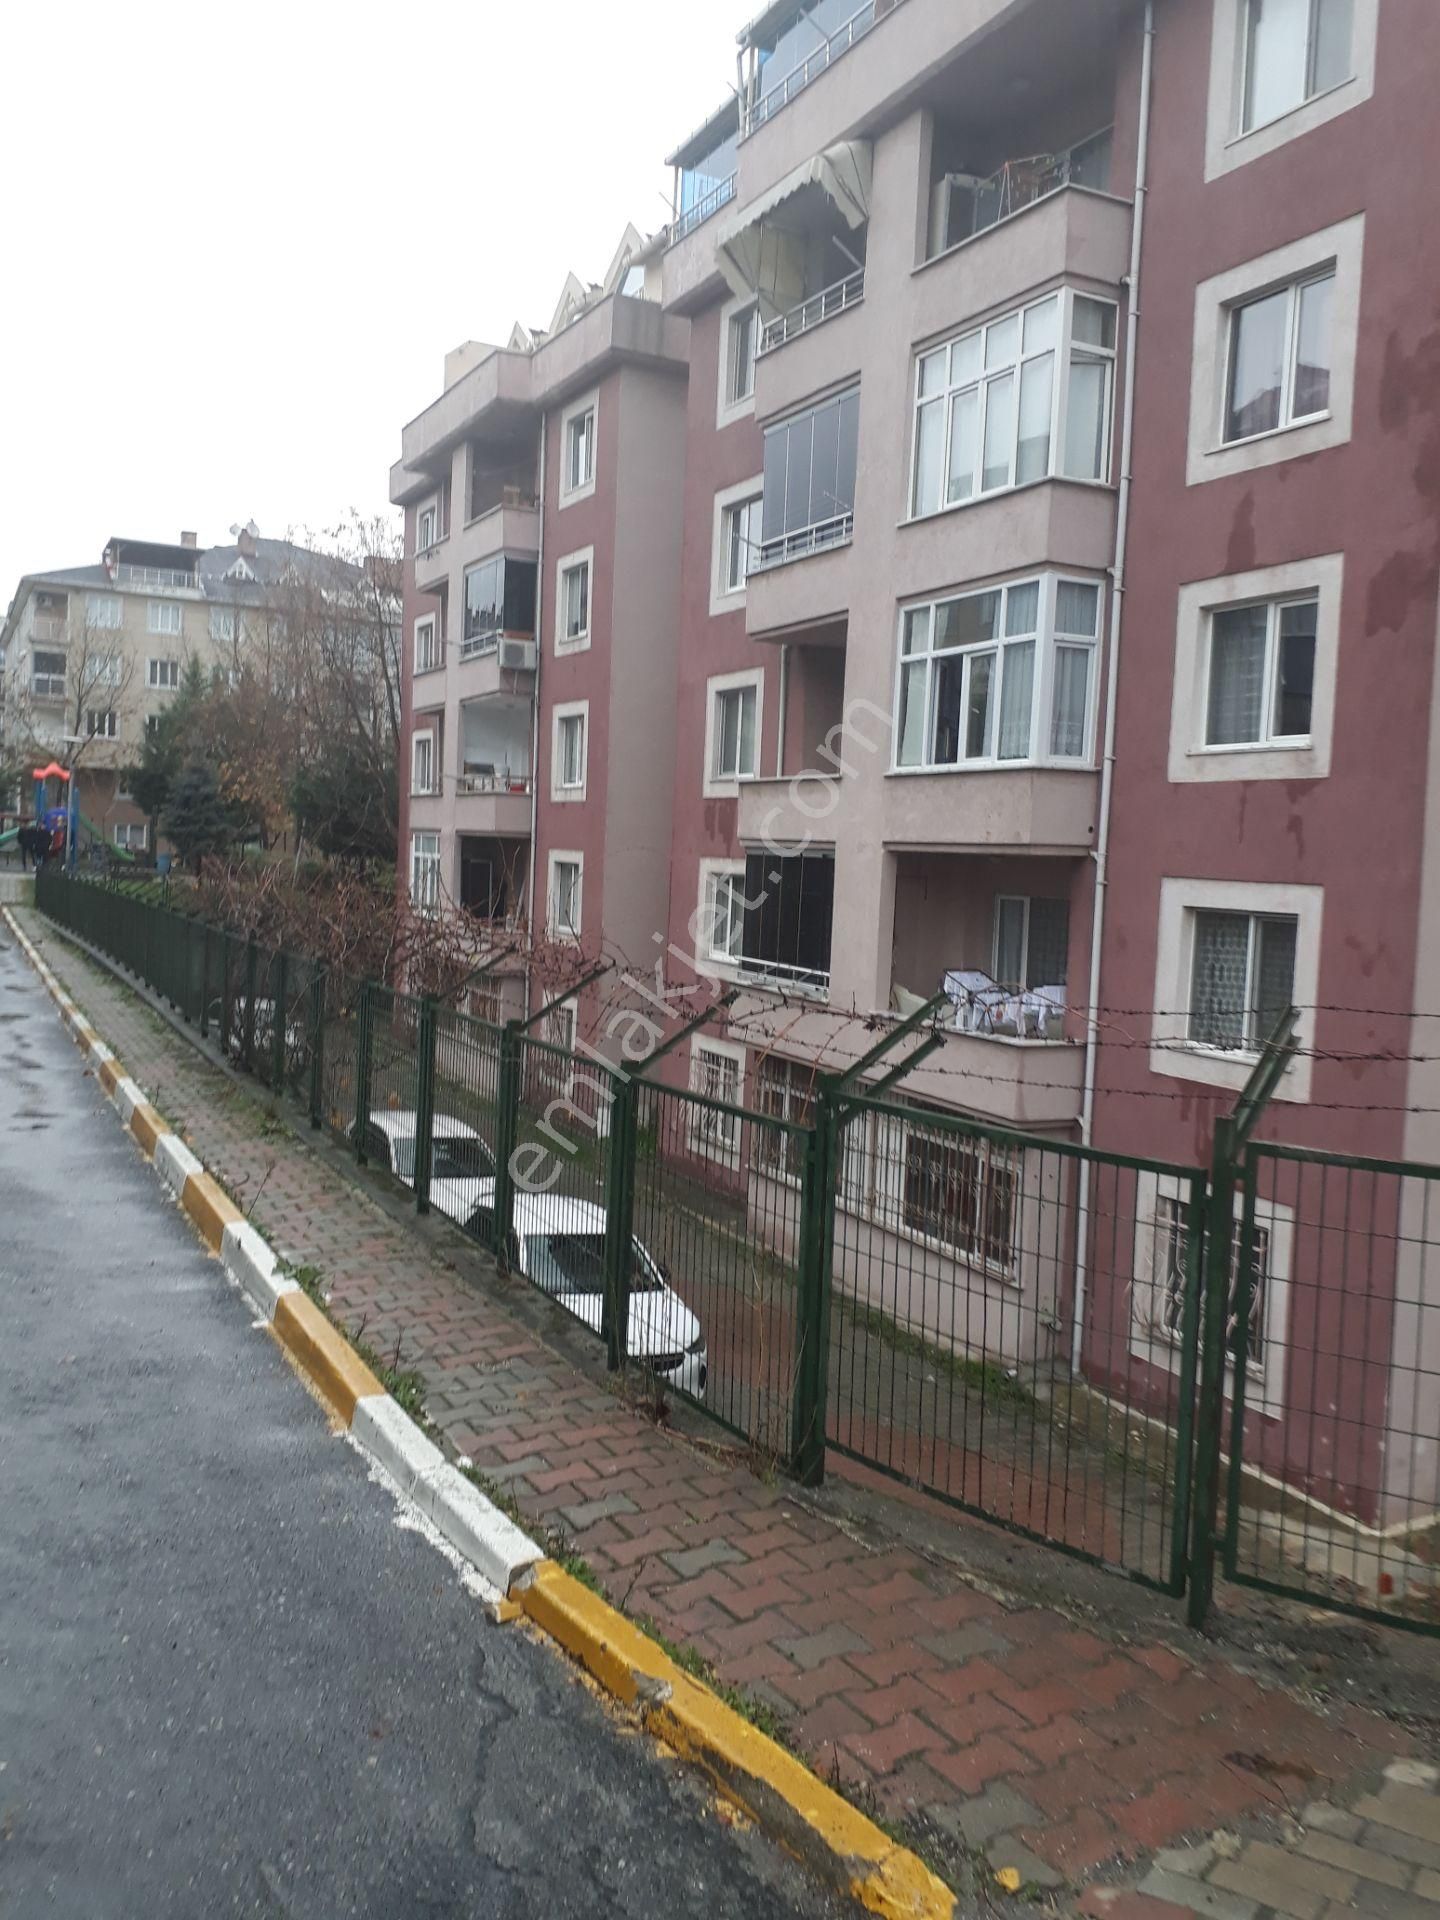 istanbul beylikduzu sahibinden satilik daire emlakjet